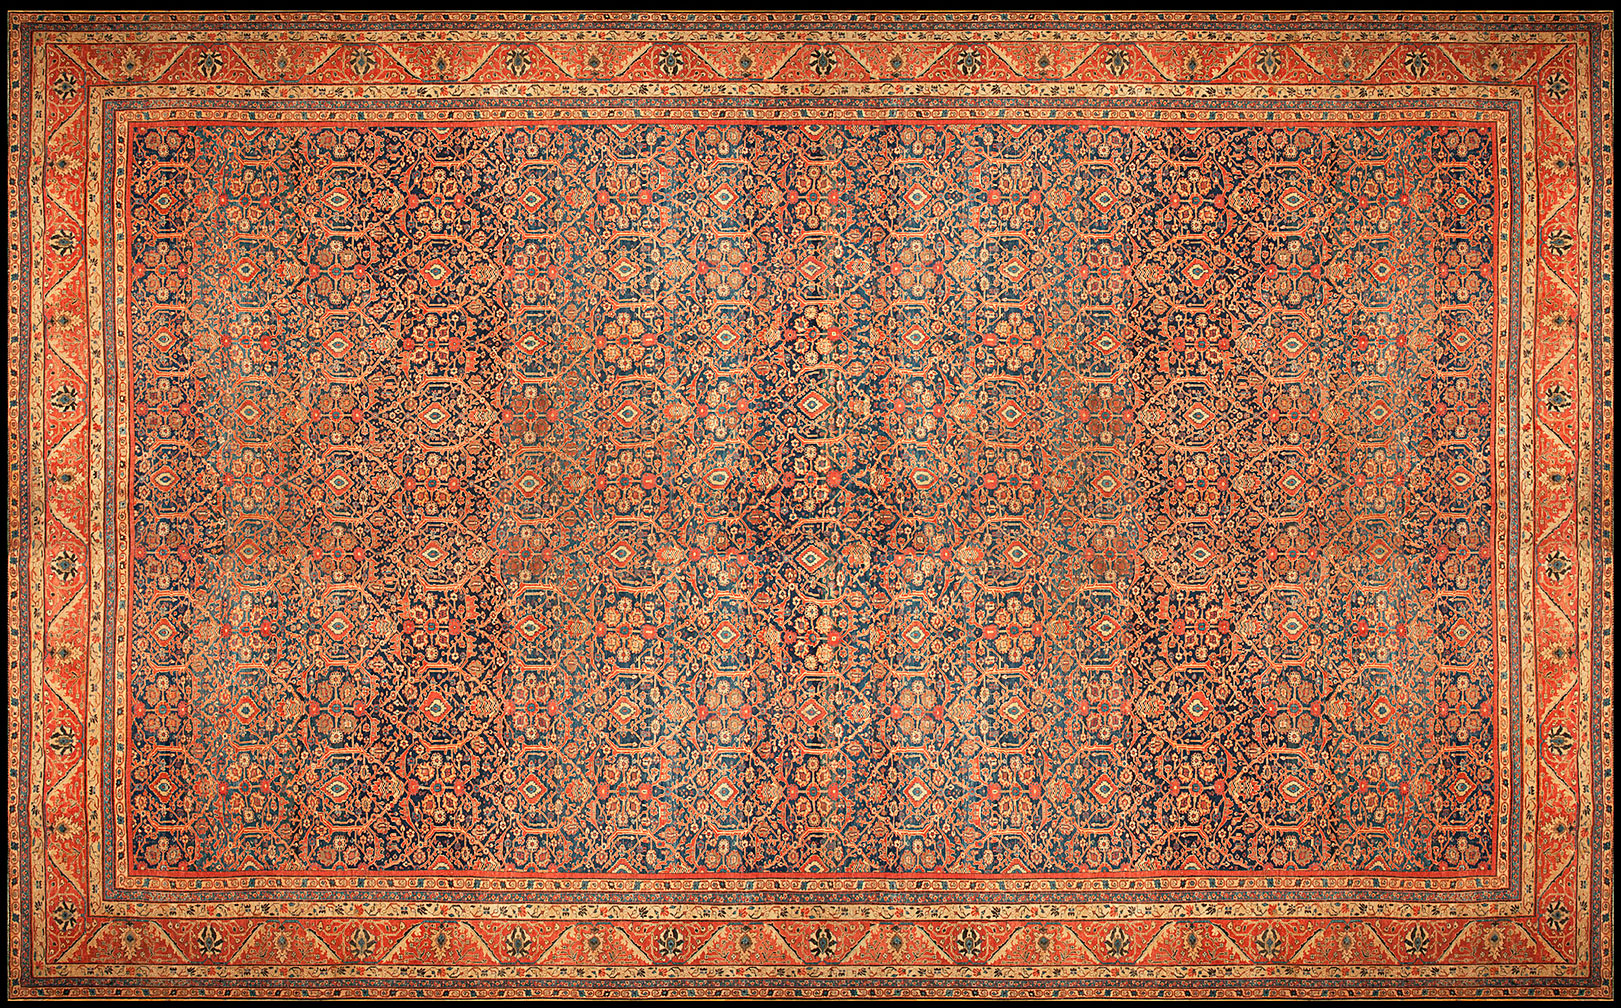 Antique sultan abad Carpet - # 50236